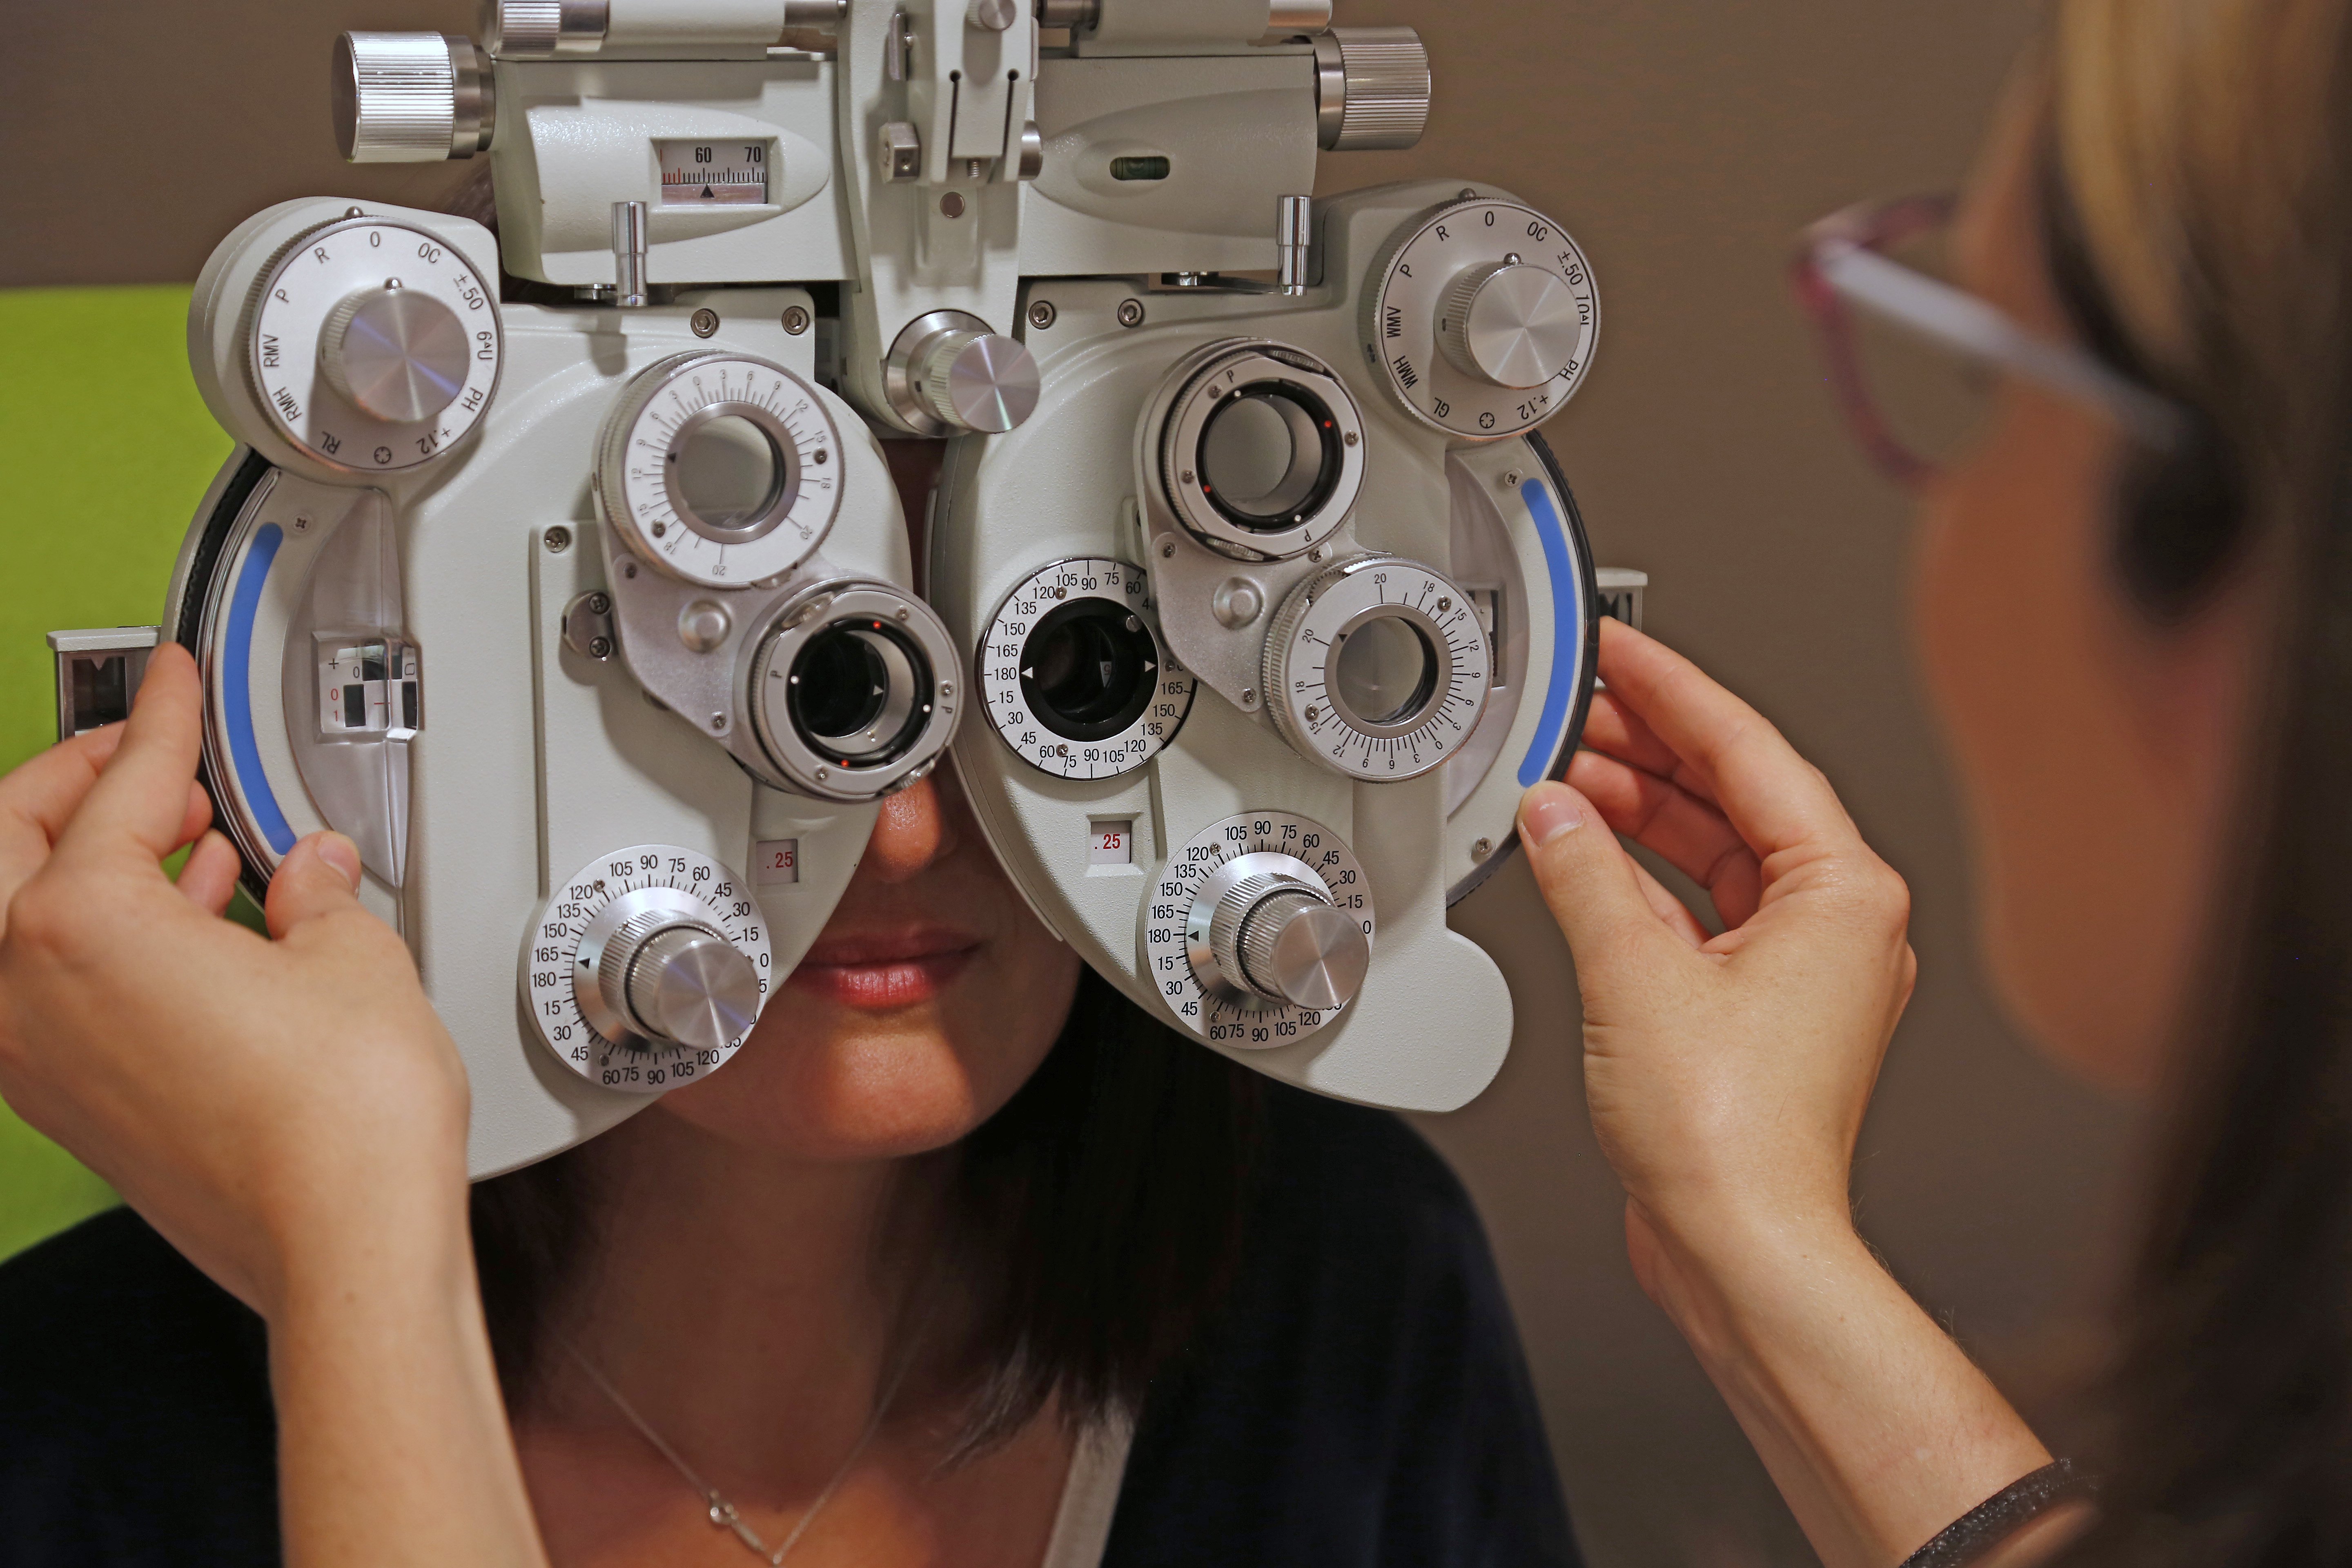 Lunettes originales : 5 marques de lunettes de vue à découvrir de toute  urgence